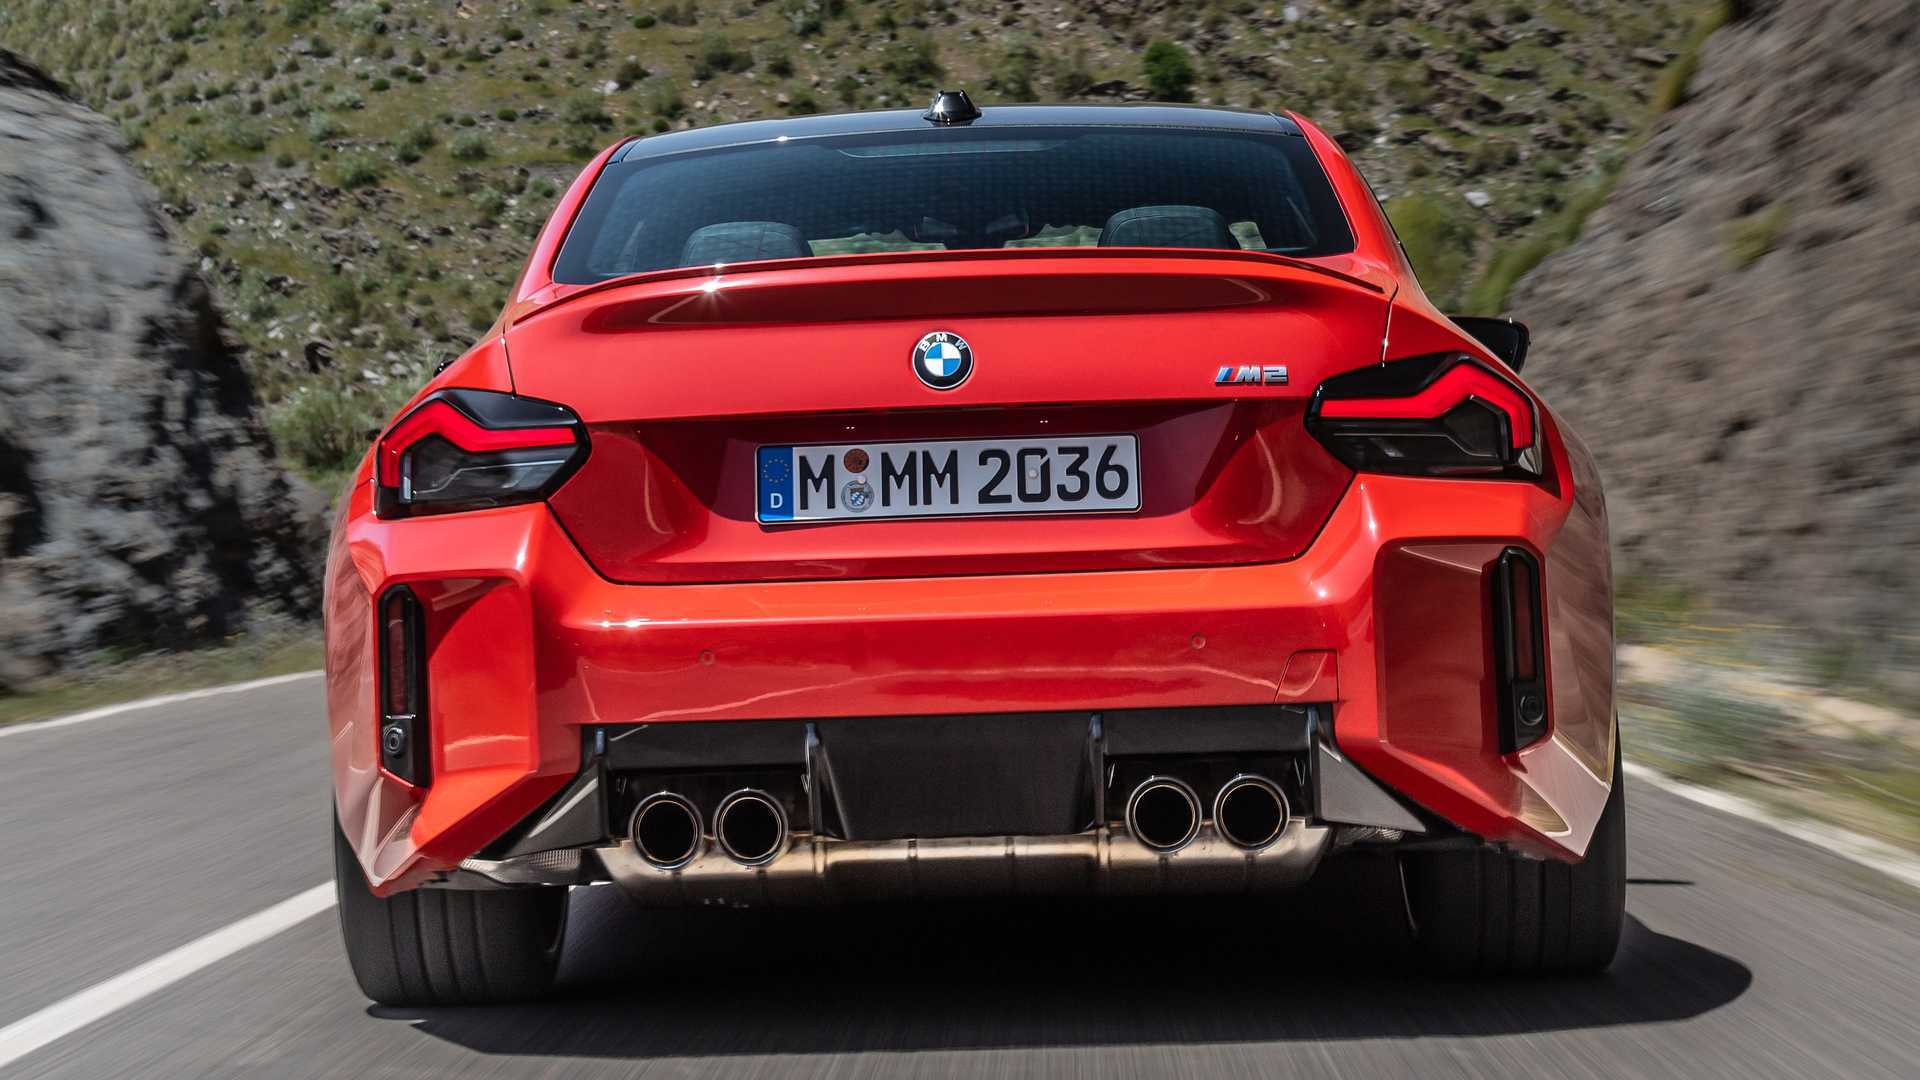 خودروی جدید BMW و این همه انتقاد!/ نسل دوم ام2 با پیشرانه پرقدرت (+عکس)